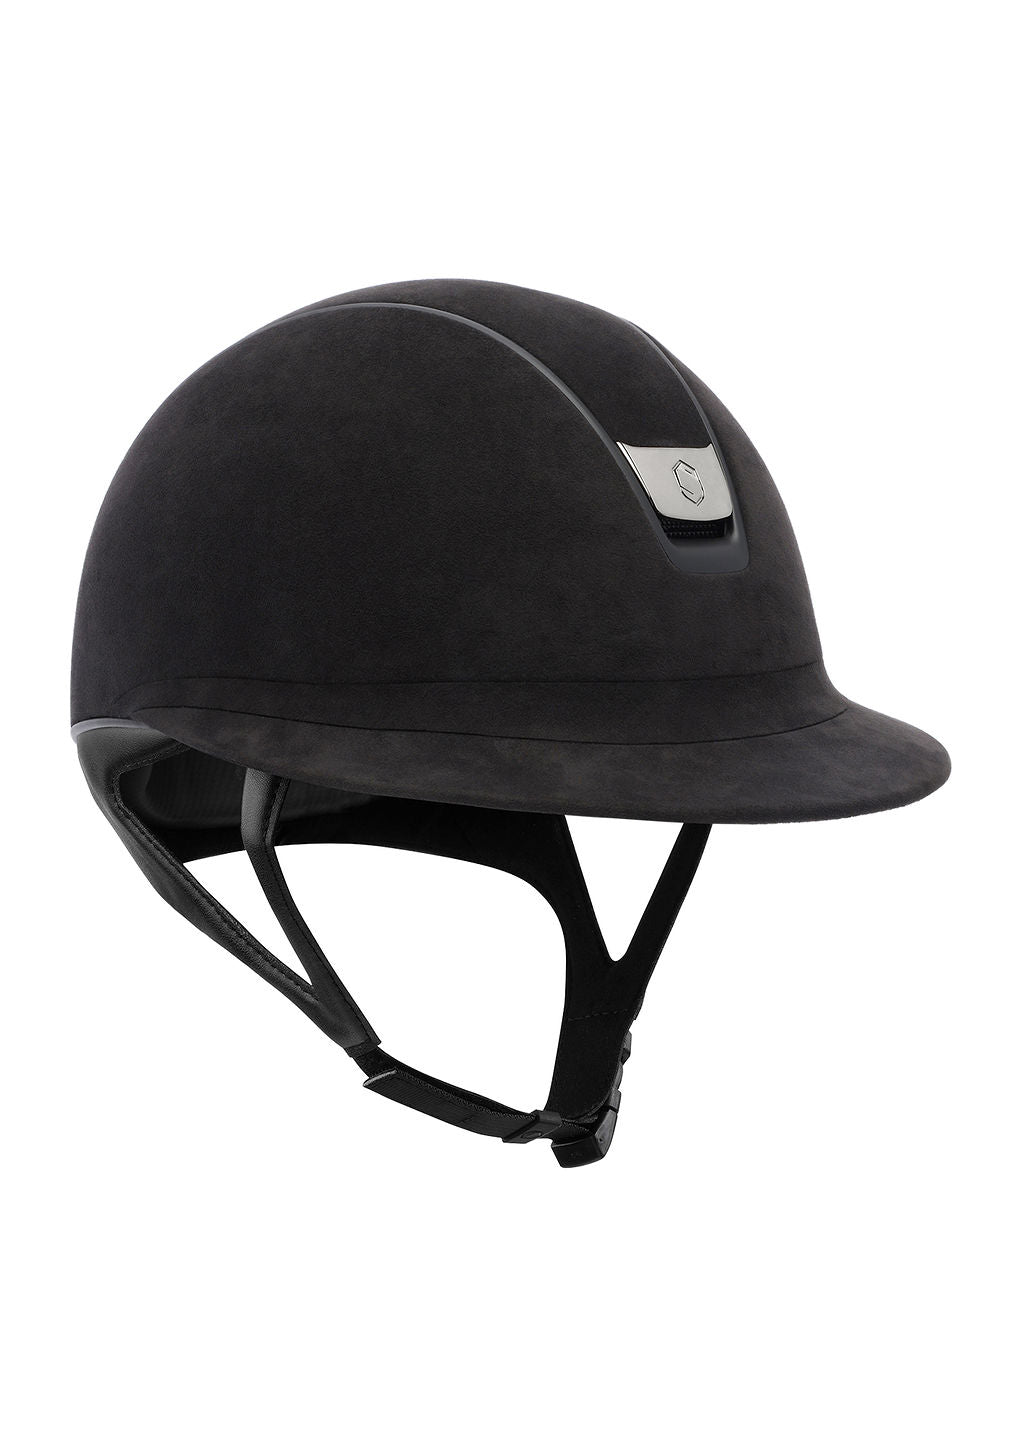 Samshield Miss Shield Premium Helmet